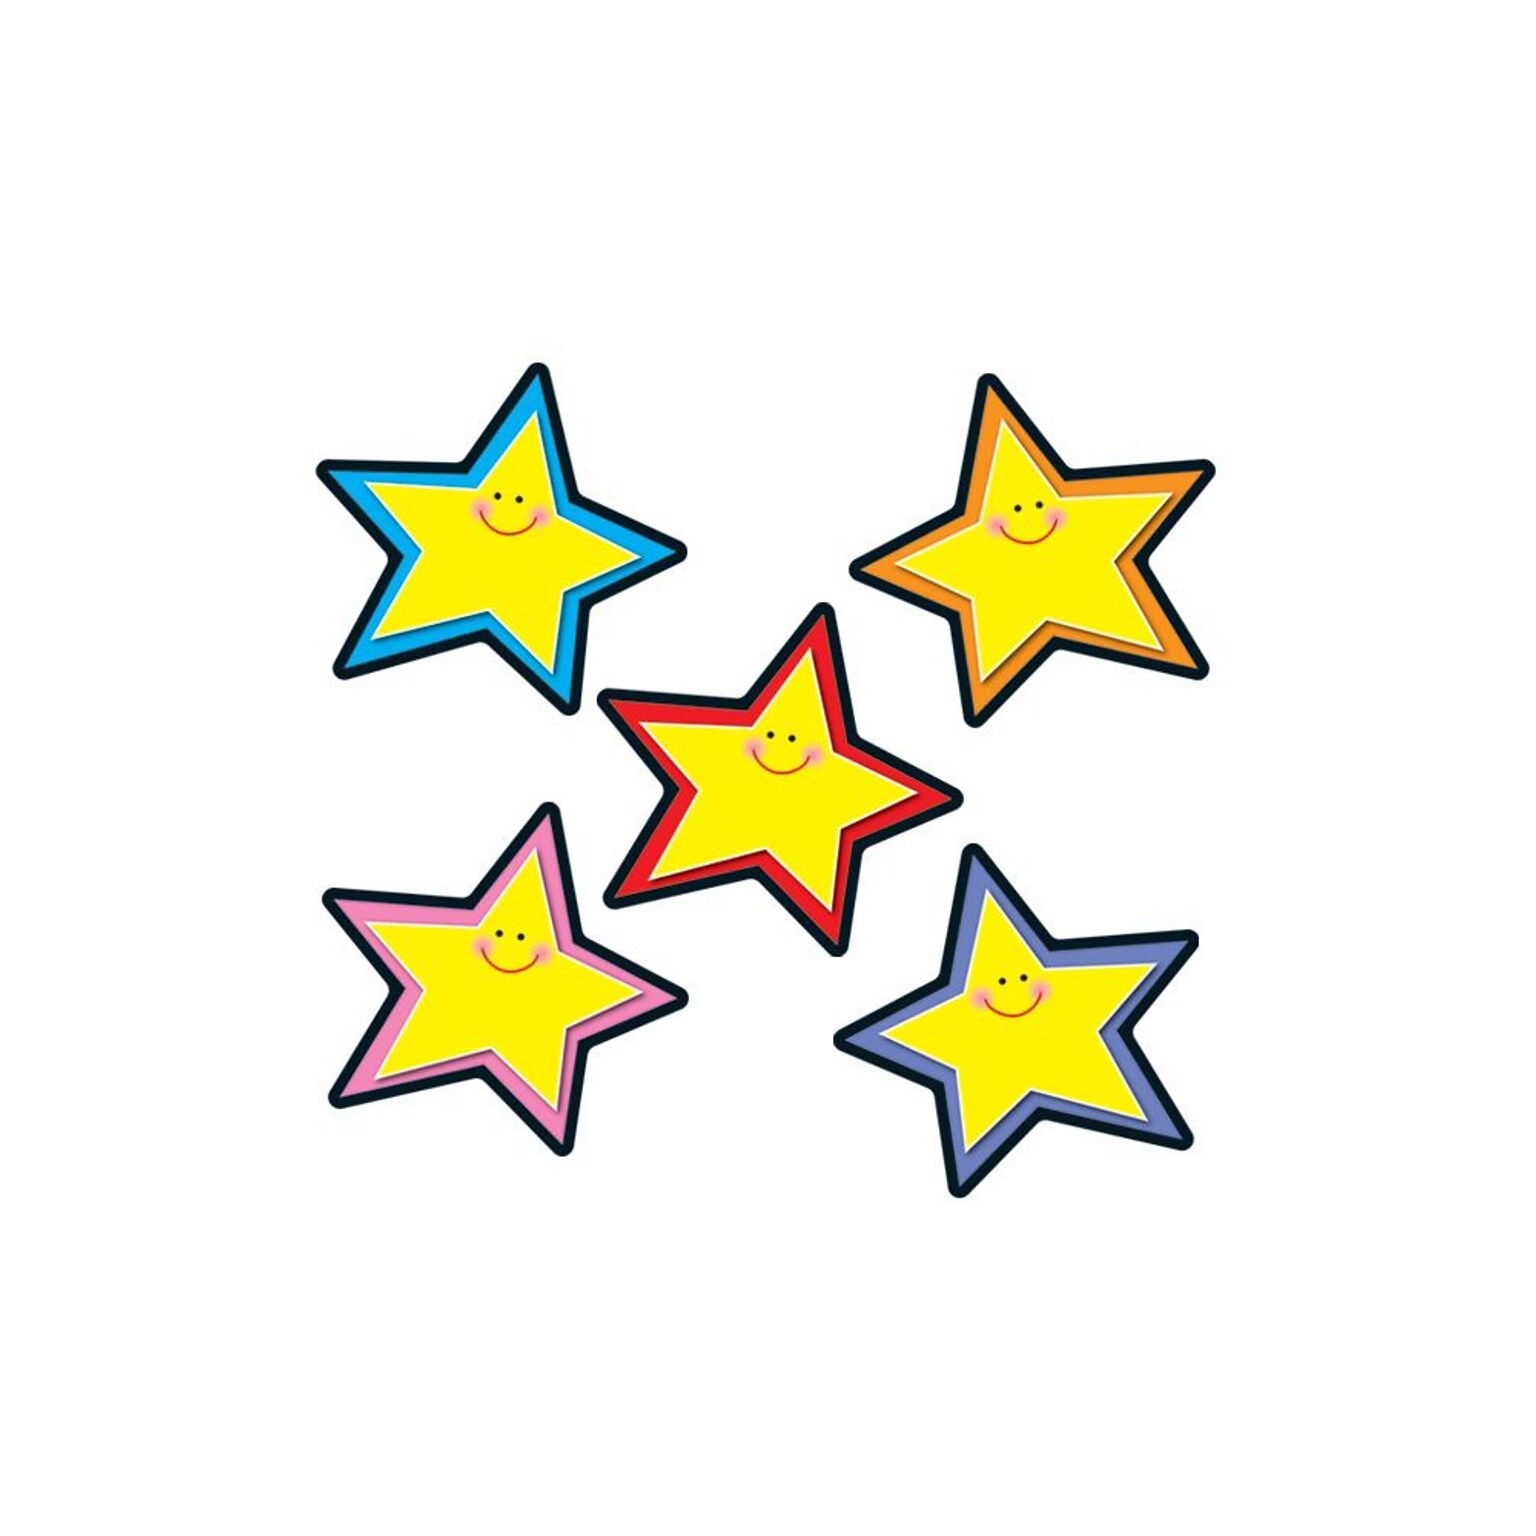 Carson-Dellosa Stars Cut-Outs, Assorted Colors, All Grades